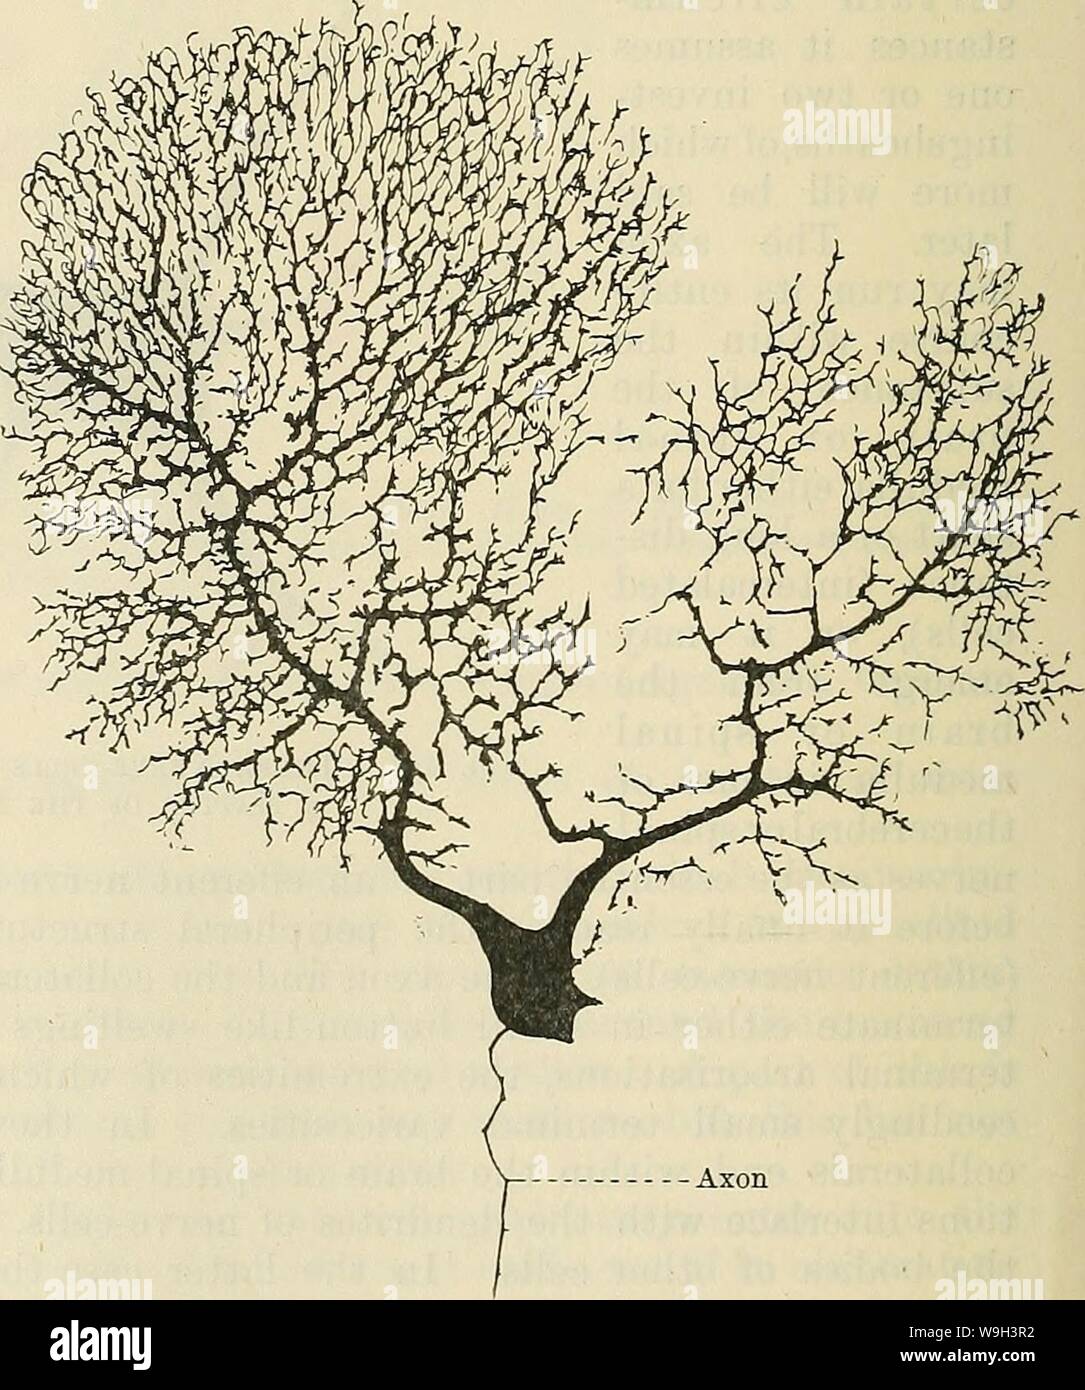 Archiv Bild ab Seite 541 von Cunningham's Lehrbuch der Anatomie (1914). Cunninghams Lehrbuch der Anatomie cunninghamstextb 00 cunn Jahr: 1914 (Nerv-Fasern. - Nerv - Fasern, ar-in Bündel von mehr oder weniger lose reichten, bilden die Nerven, die in jedem Teil des Körpers. Sie stellen auch den größten Teil des Gehirn und Rückenmark Medulla. Nerv-Fasern sind die Verhalten-ing Elemente des Nervensystems; sie dienen den Nerv zu bringen-Zellen in Bezug sowohl untereinander als auch mit den verschiedenen Geweben des Körpers. Es gibt verschiedene Sorten von Nerv - Fasern, sondern in allen Die leadi Stockfoto